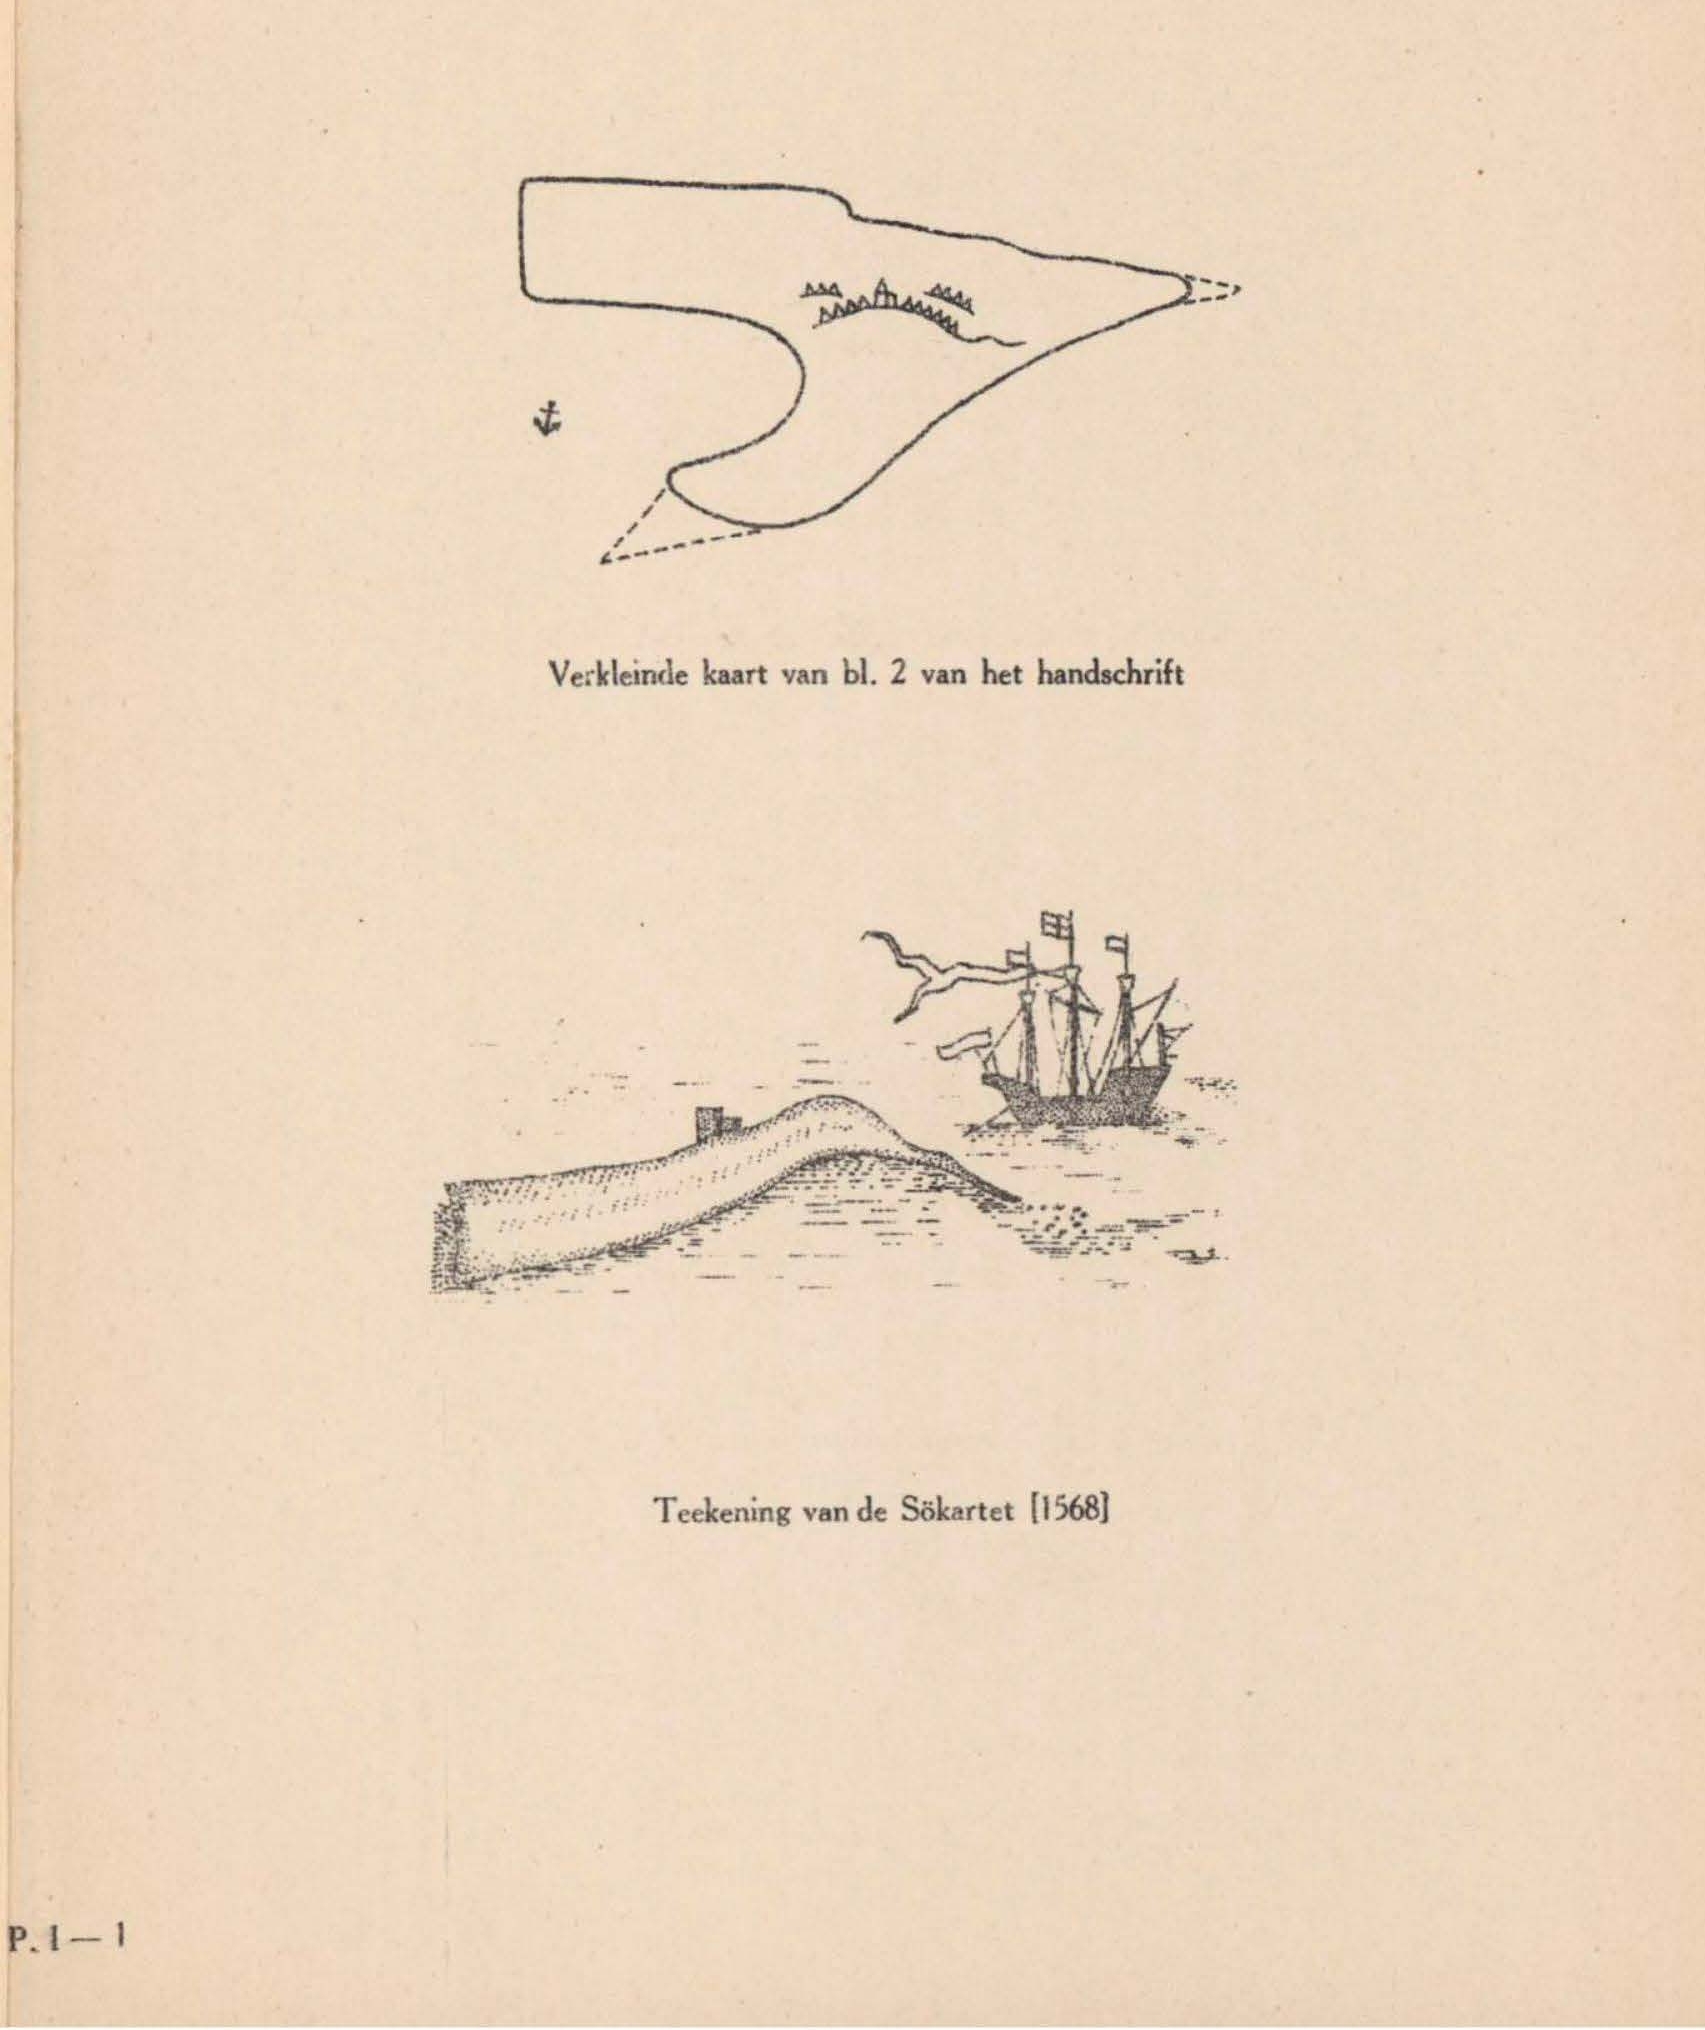 Denucé & Gernez (1936, Pl. 01.1)